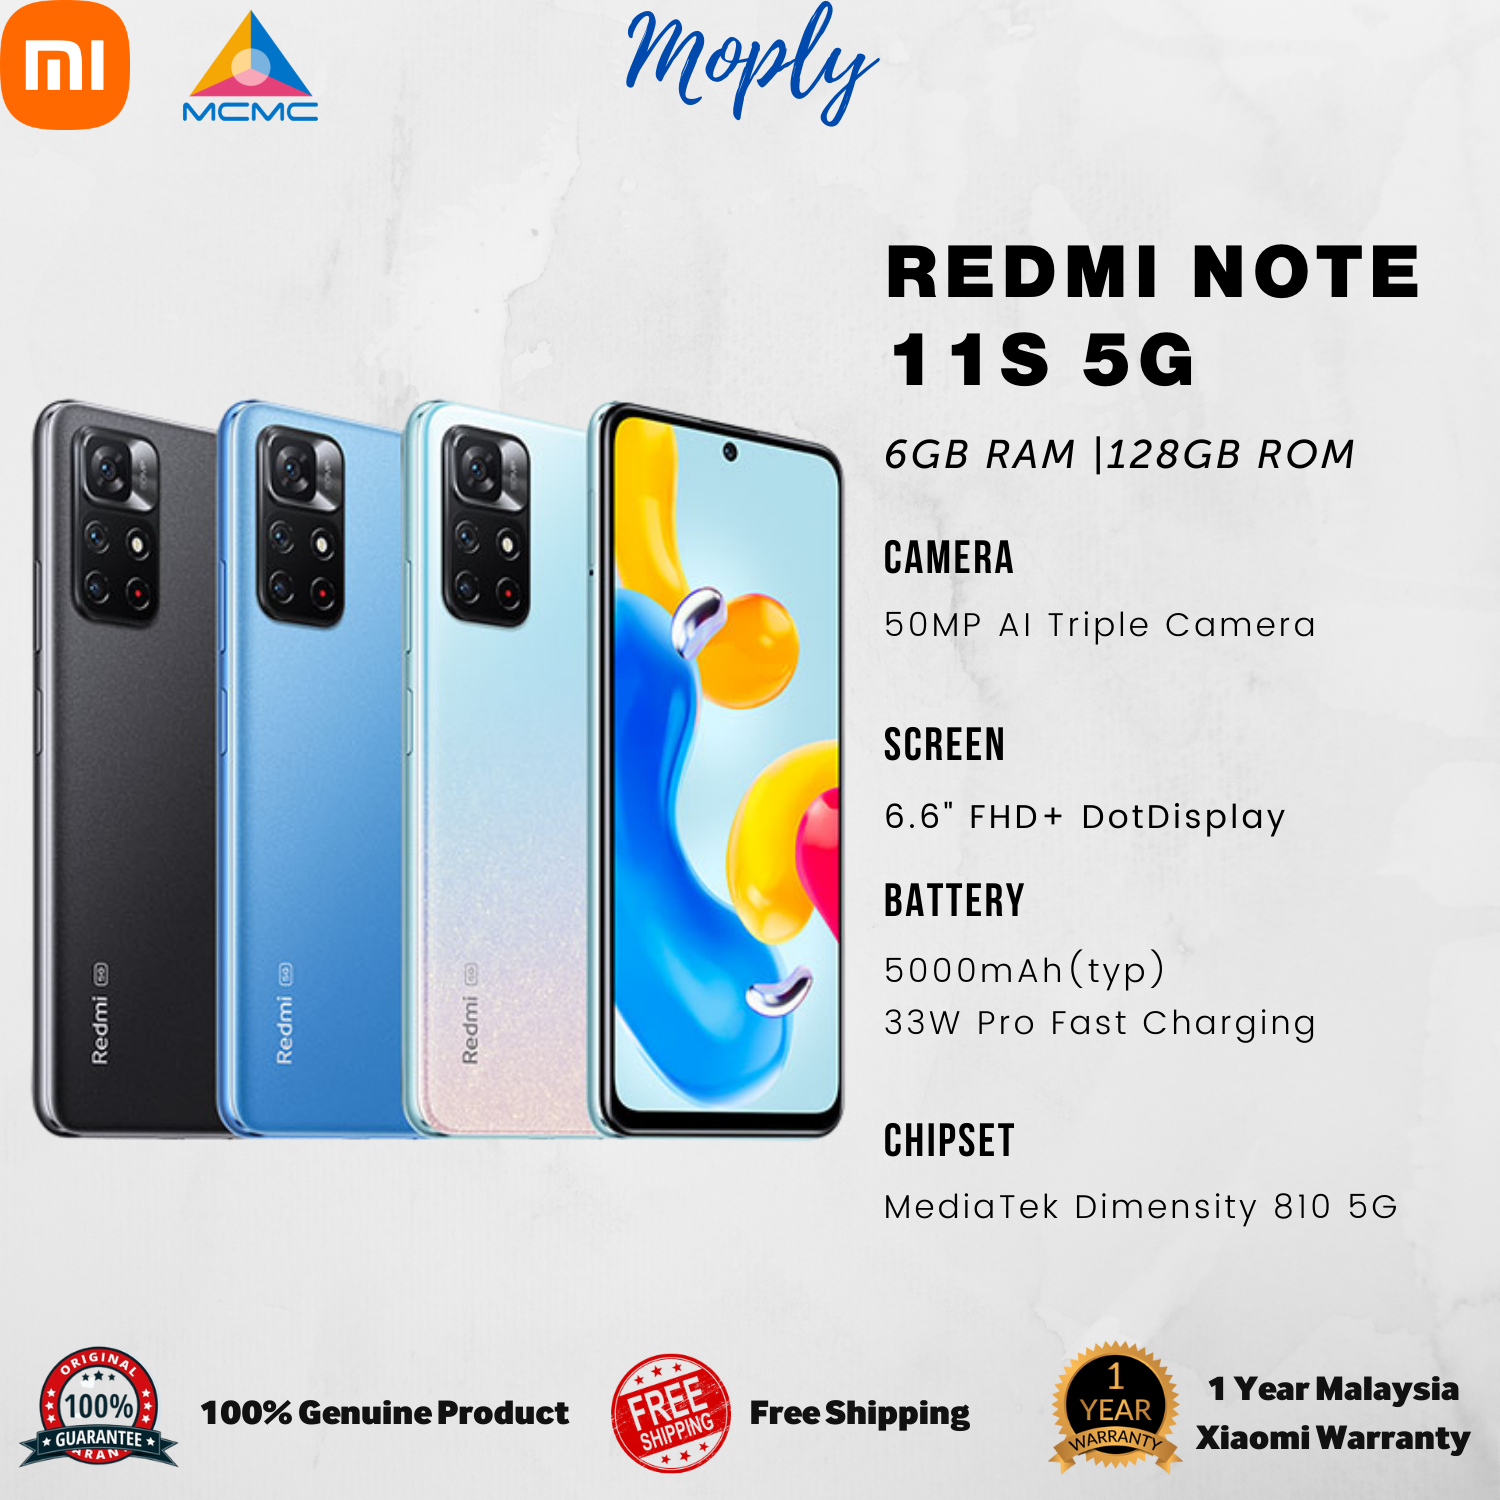 Malaysia Set] Redmi Note 11S 5G (128GB ROM, 6GB RAM) Smartphone with 1  Year Xiaomi Malaysia Warranty